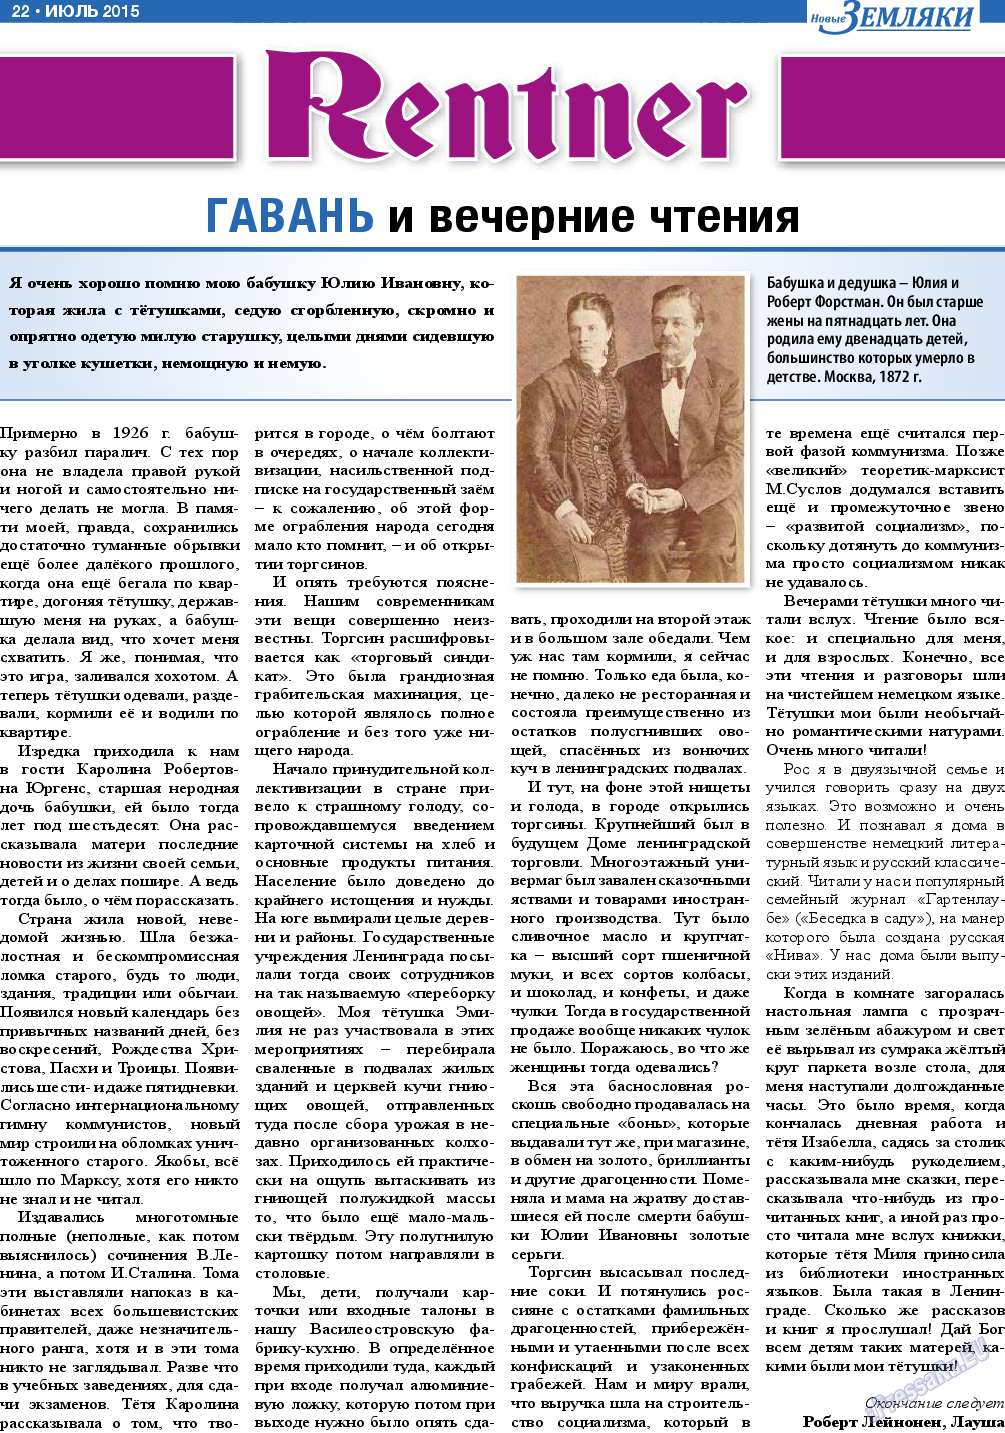 Новые Земляки, газета. 2015 №7 стр.22